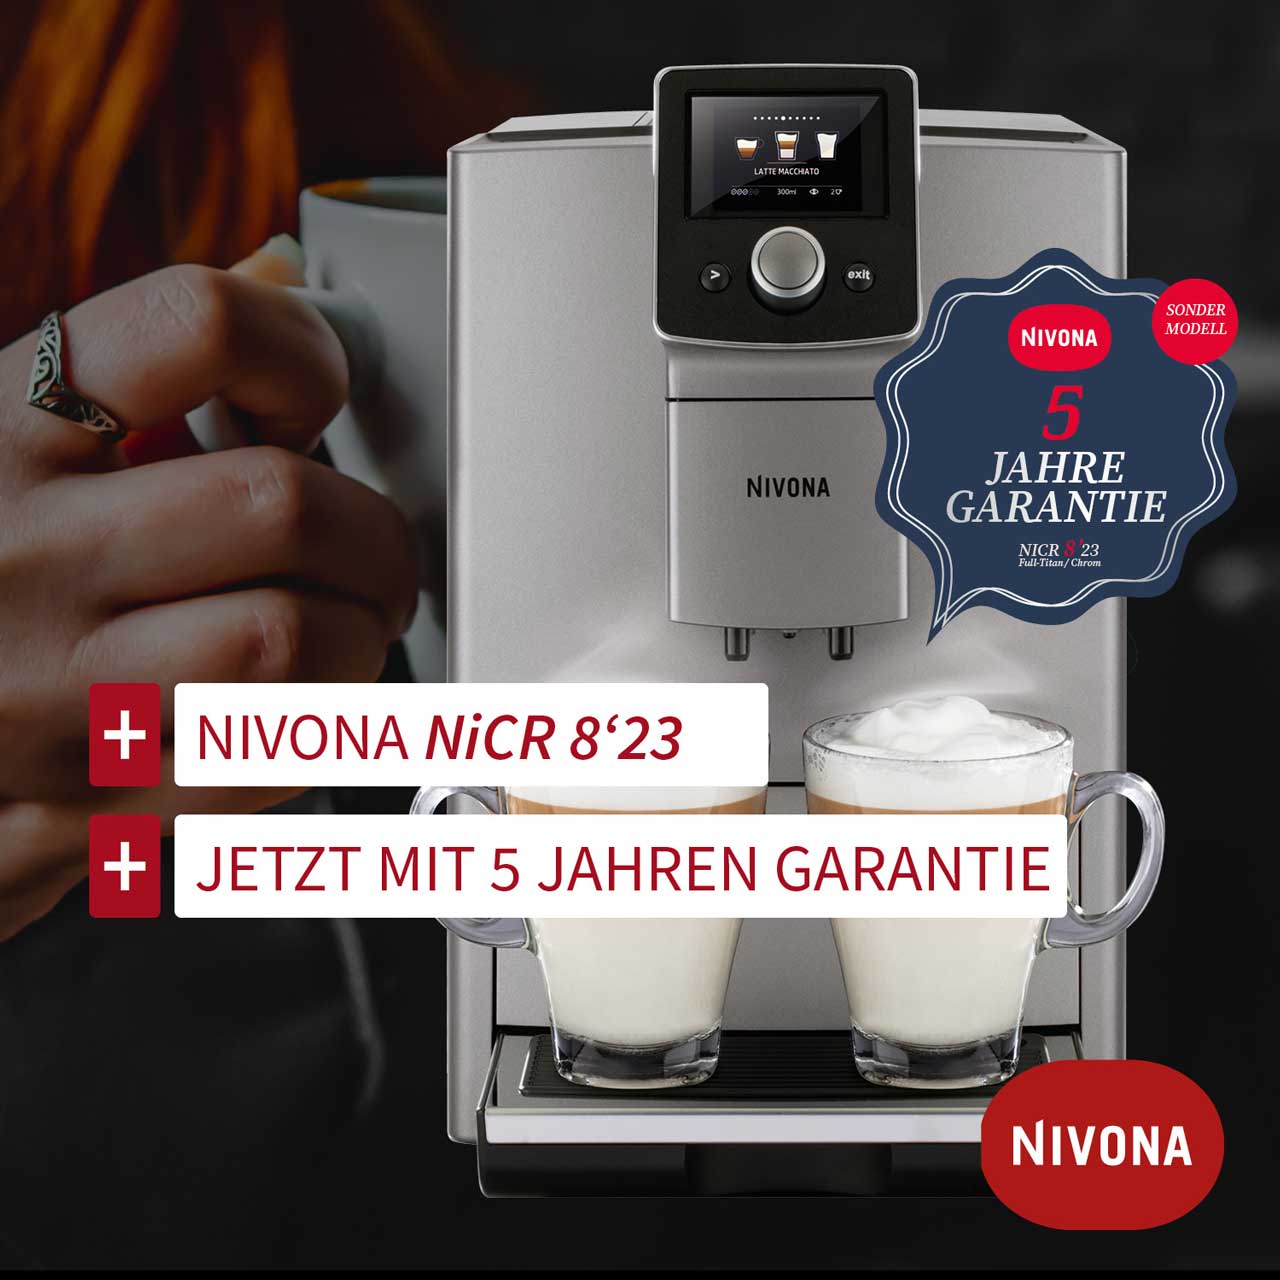 Nivona NiCR KAffeevollautomat mit 5 Jahren Garantie jetzt bei Bloch & Müller in Ingelheim